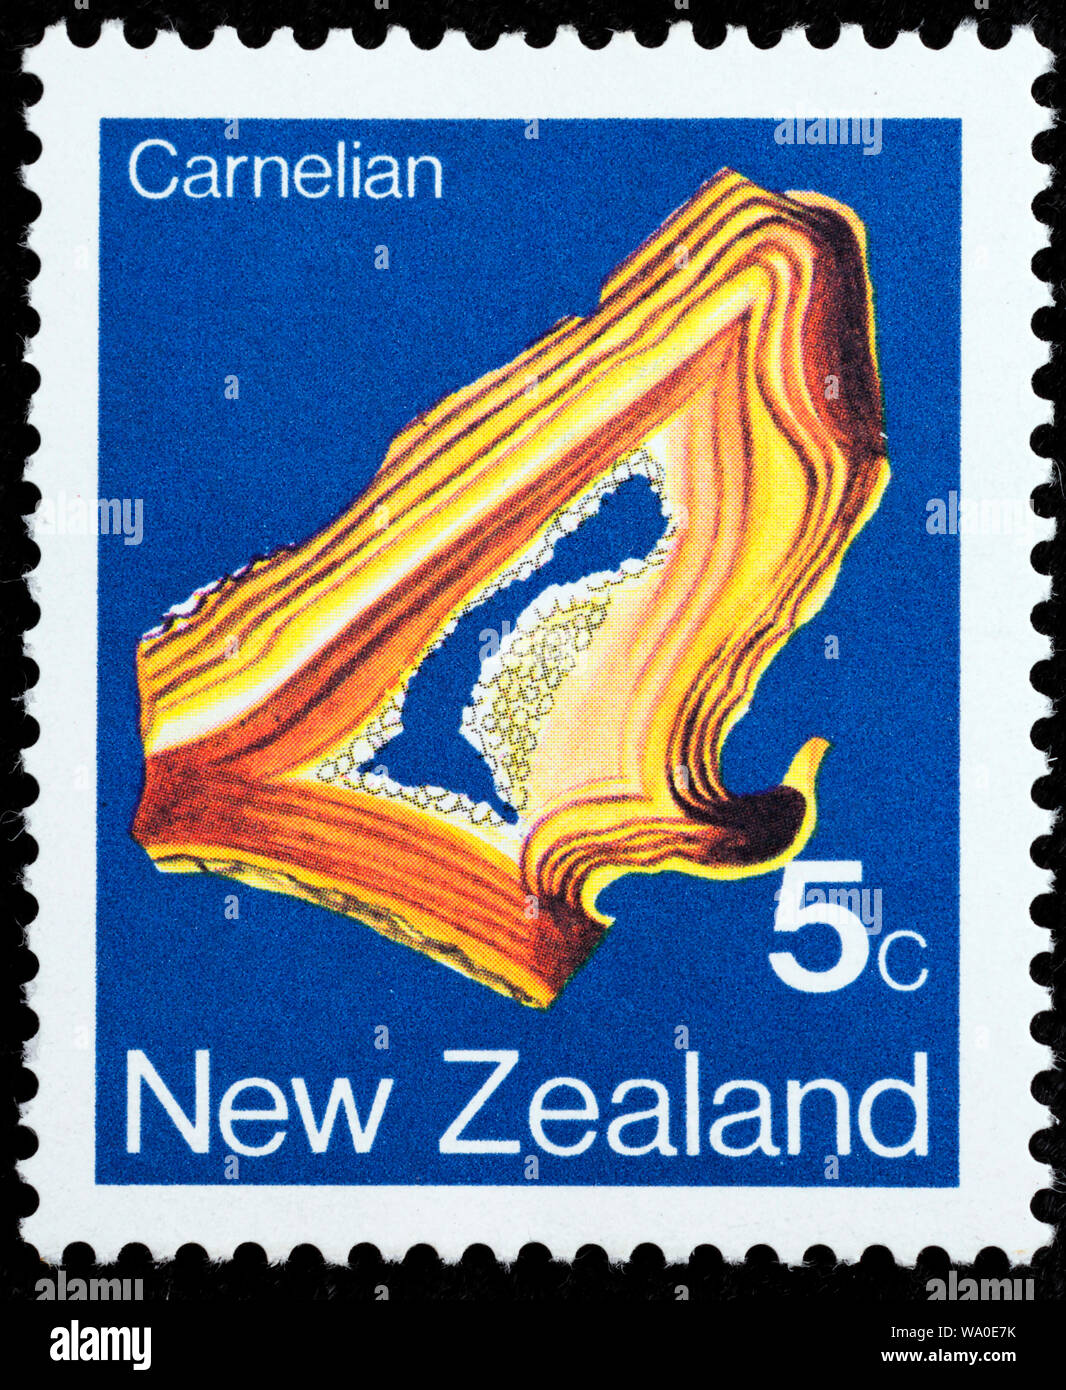 La Cornaline, minéral, timbre-poste, Nouvelle-Zélande, 1982 Banque D'Images